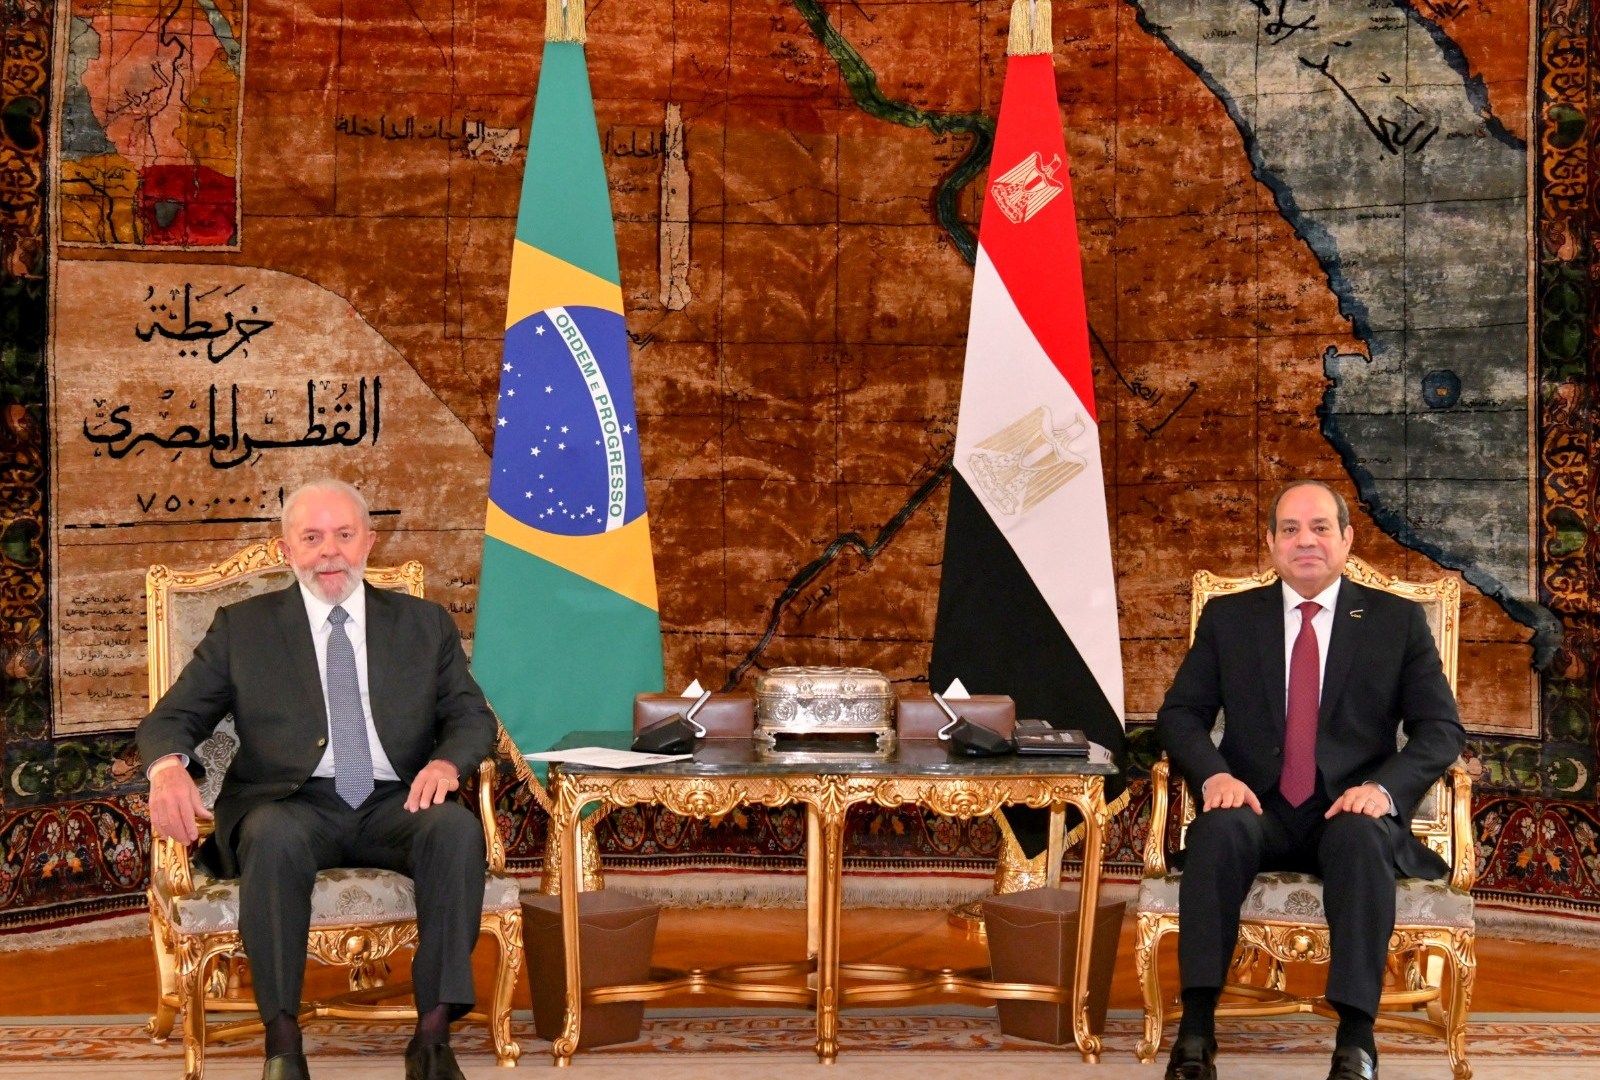 رئيس البرازيل ينتقد إسرائيل من القاهرة | أخبار – البوكس نيوز